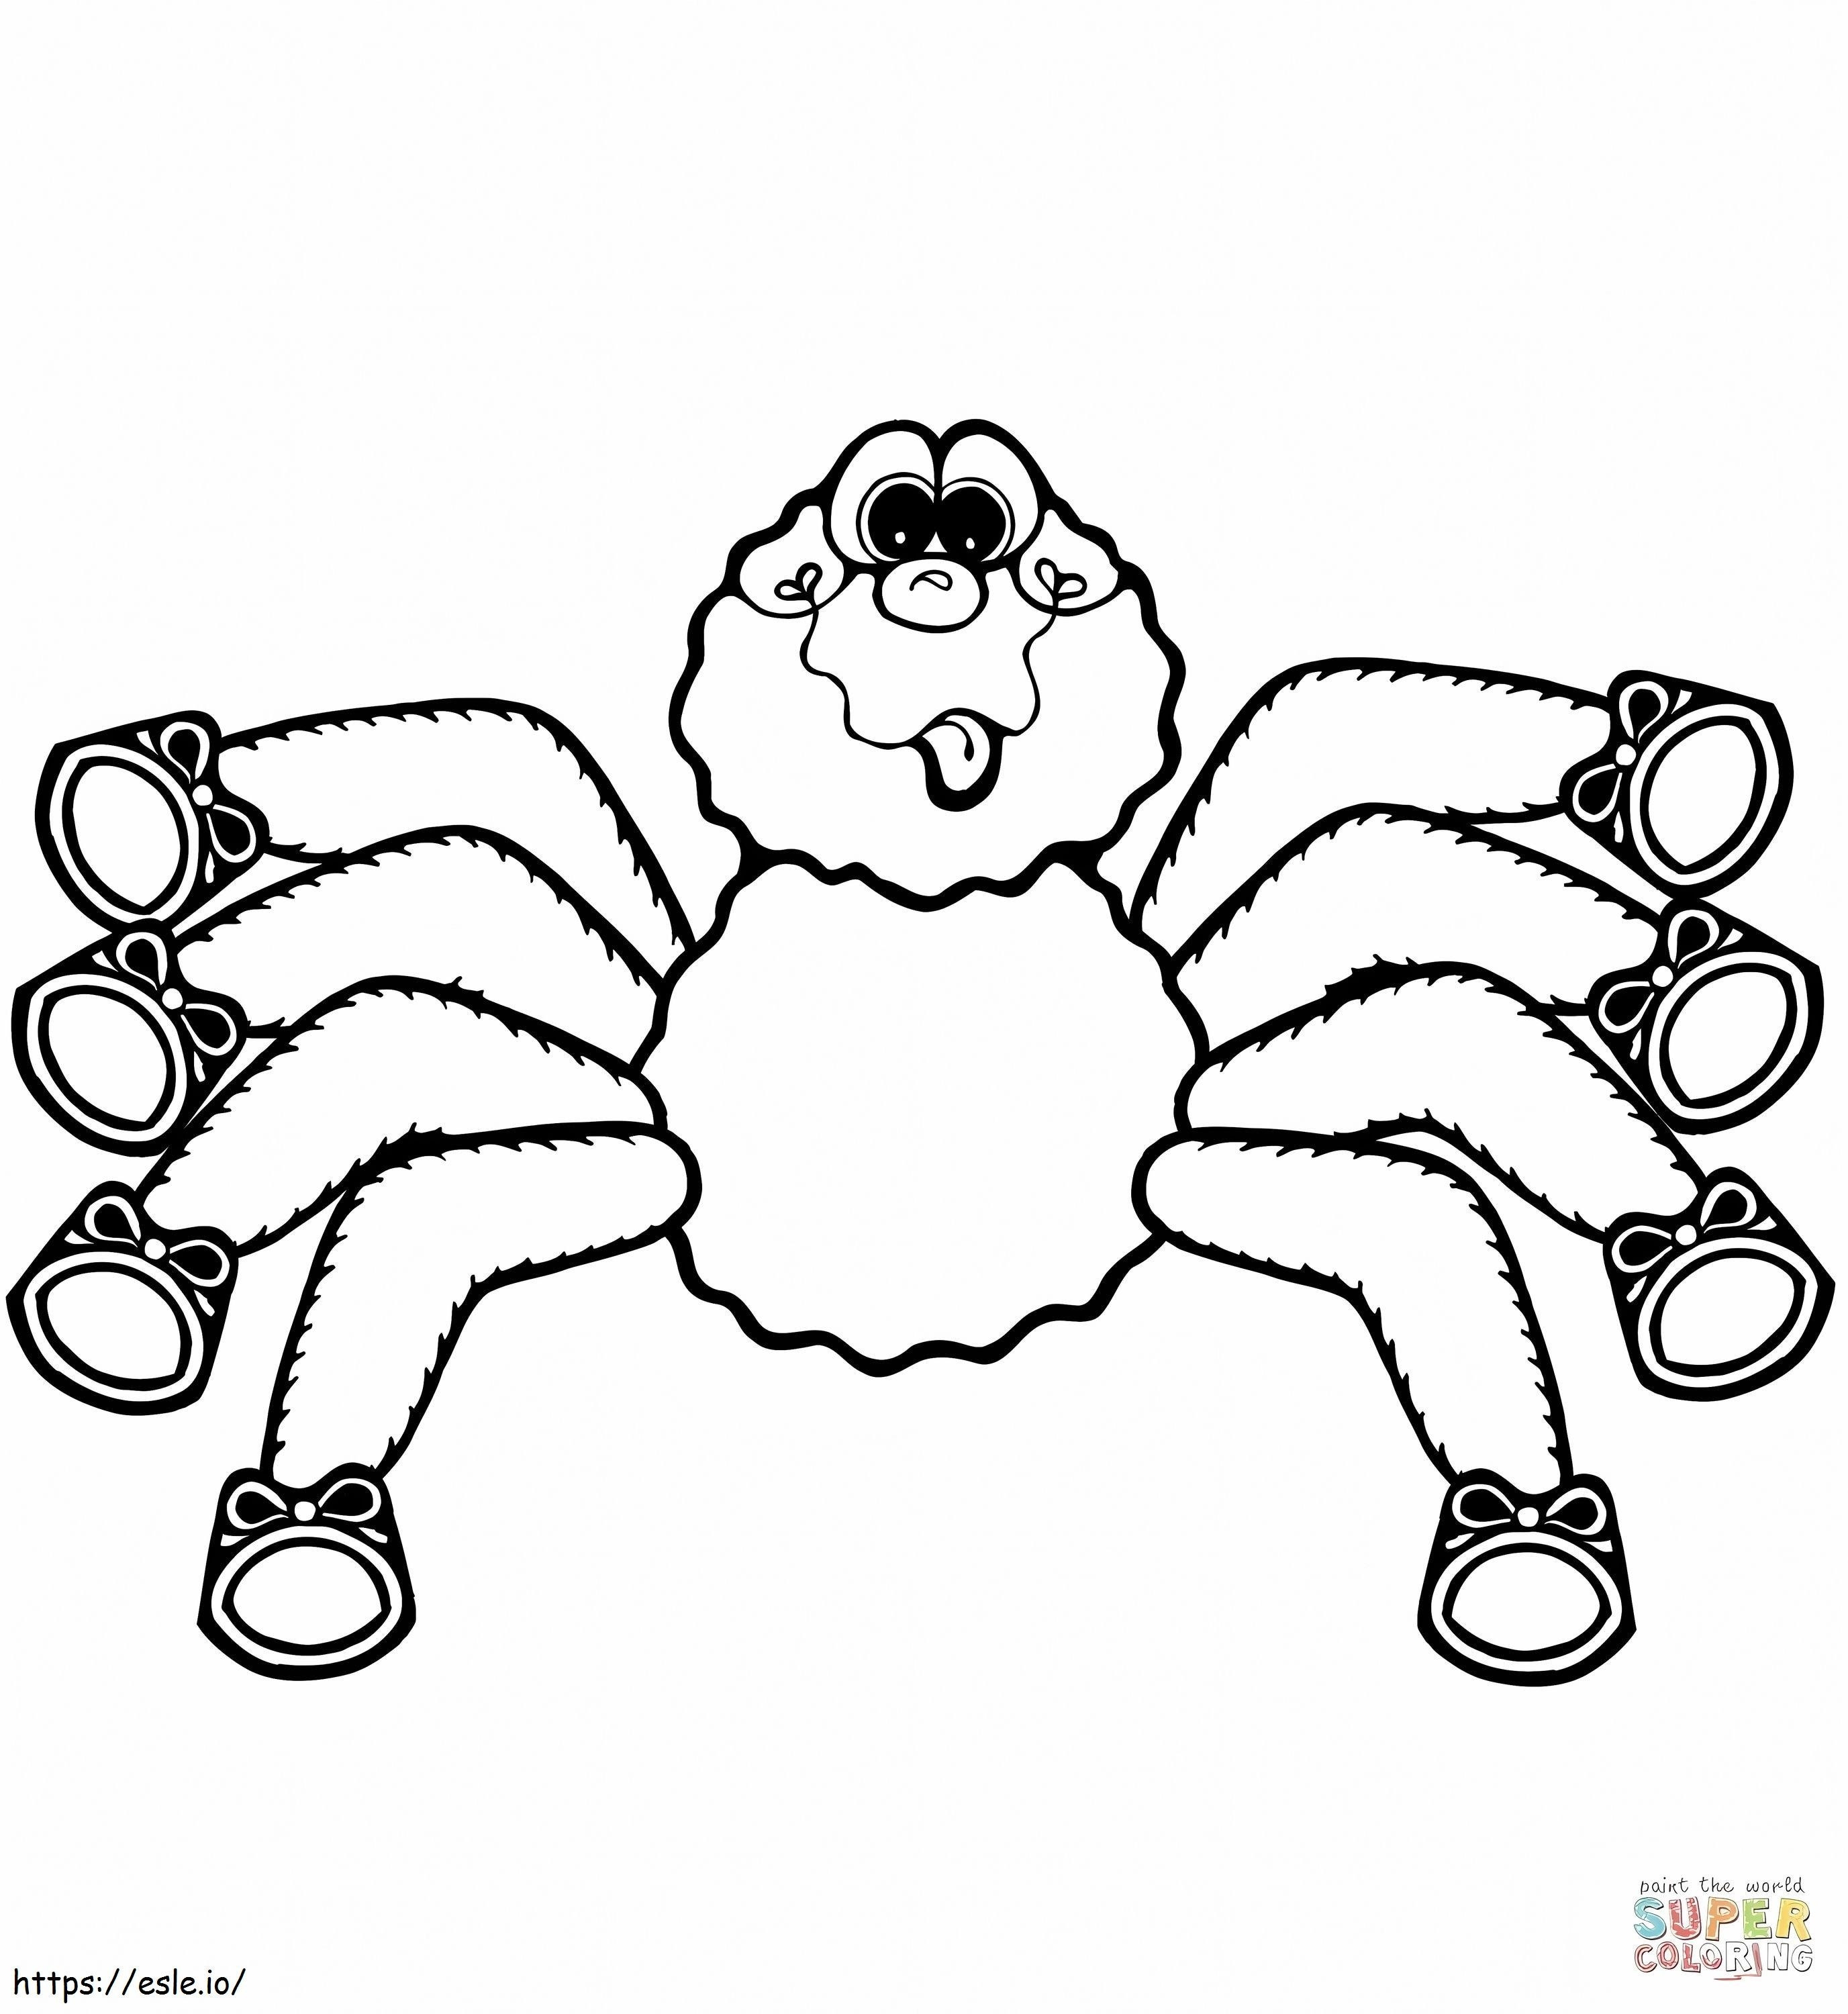 1545183164_Cartoon-Spinne 1 ausmalbilder